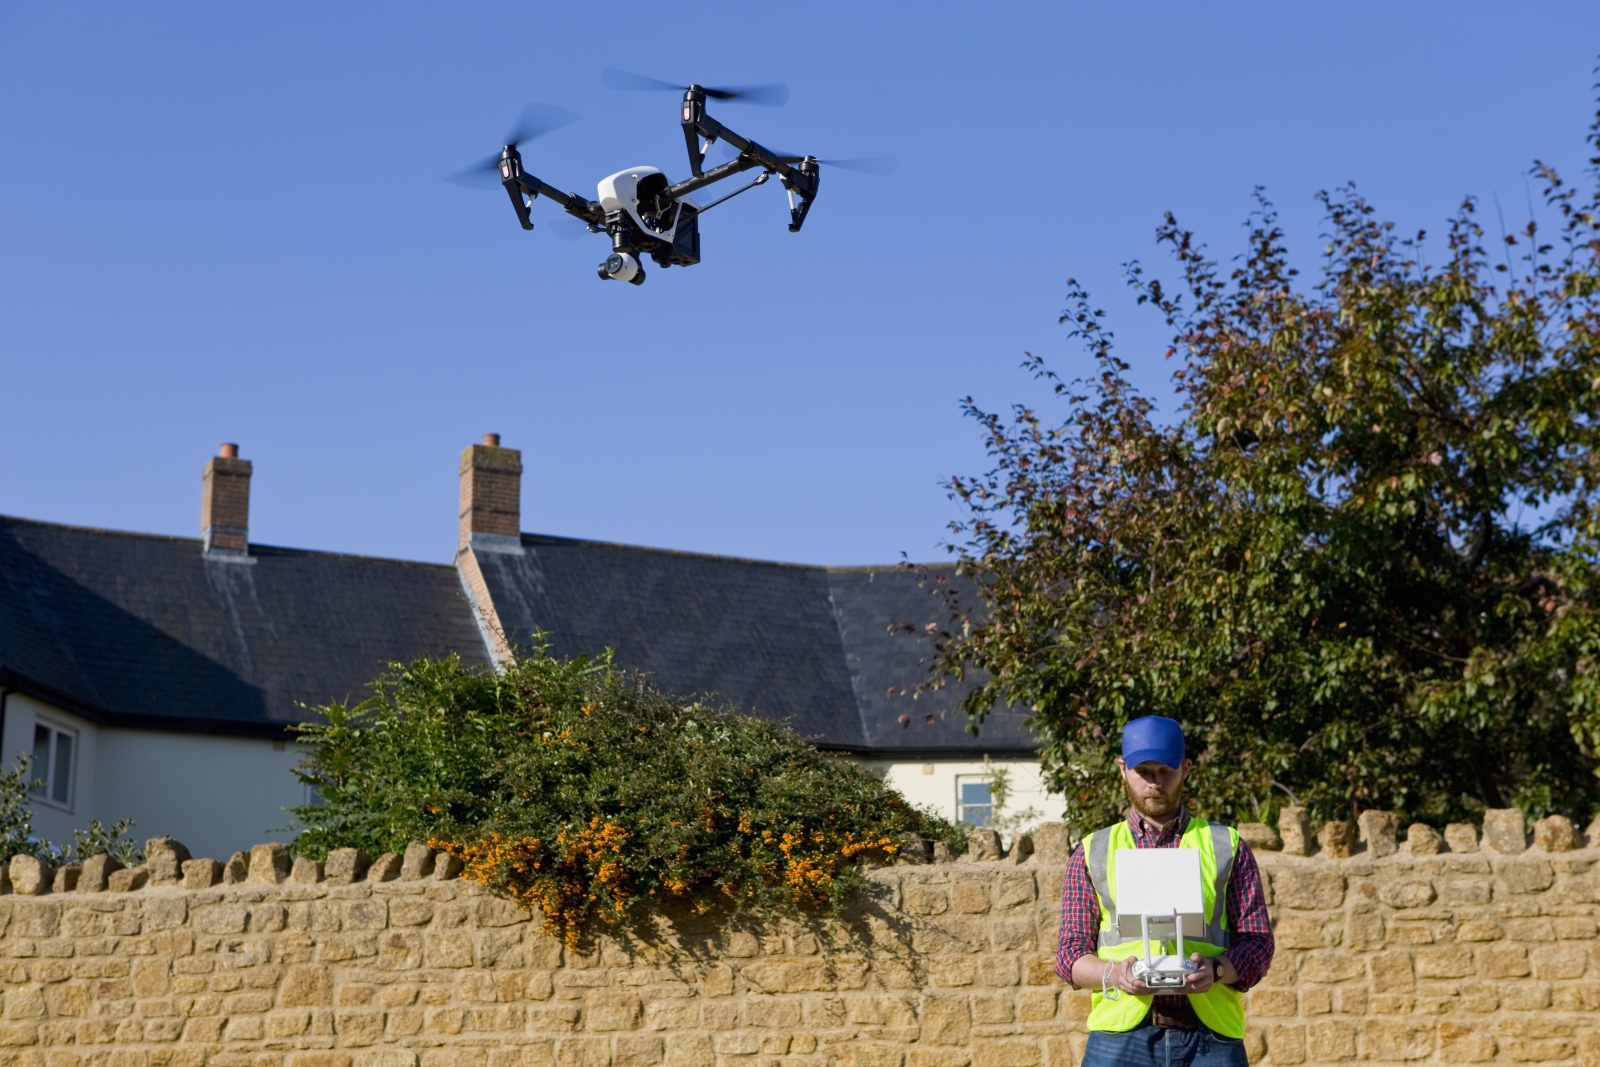 acheter un drone immobilier ou profesionnel